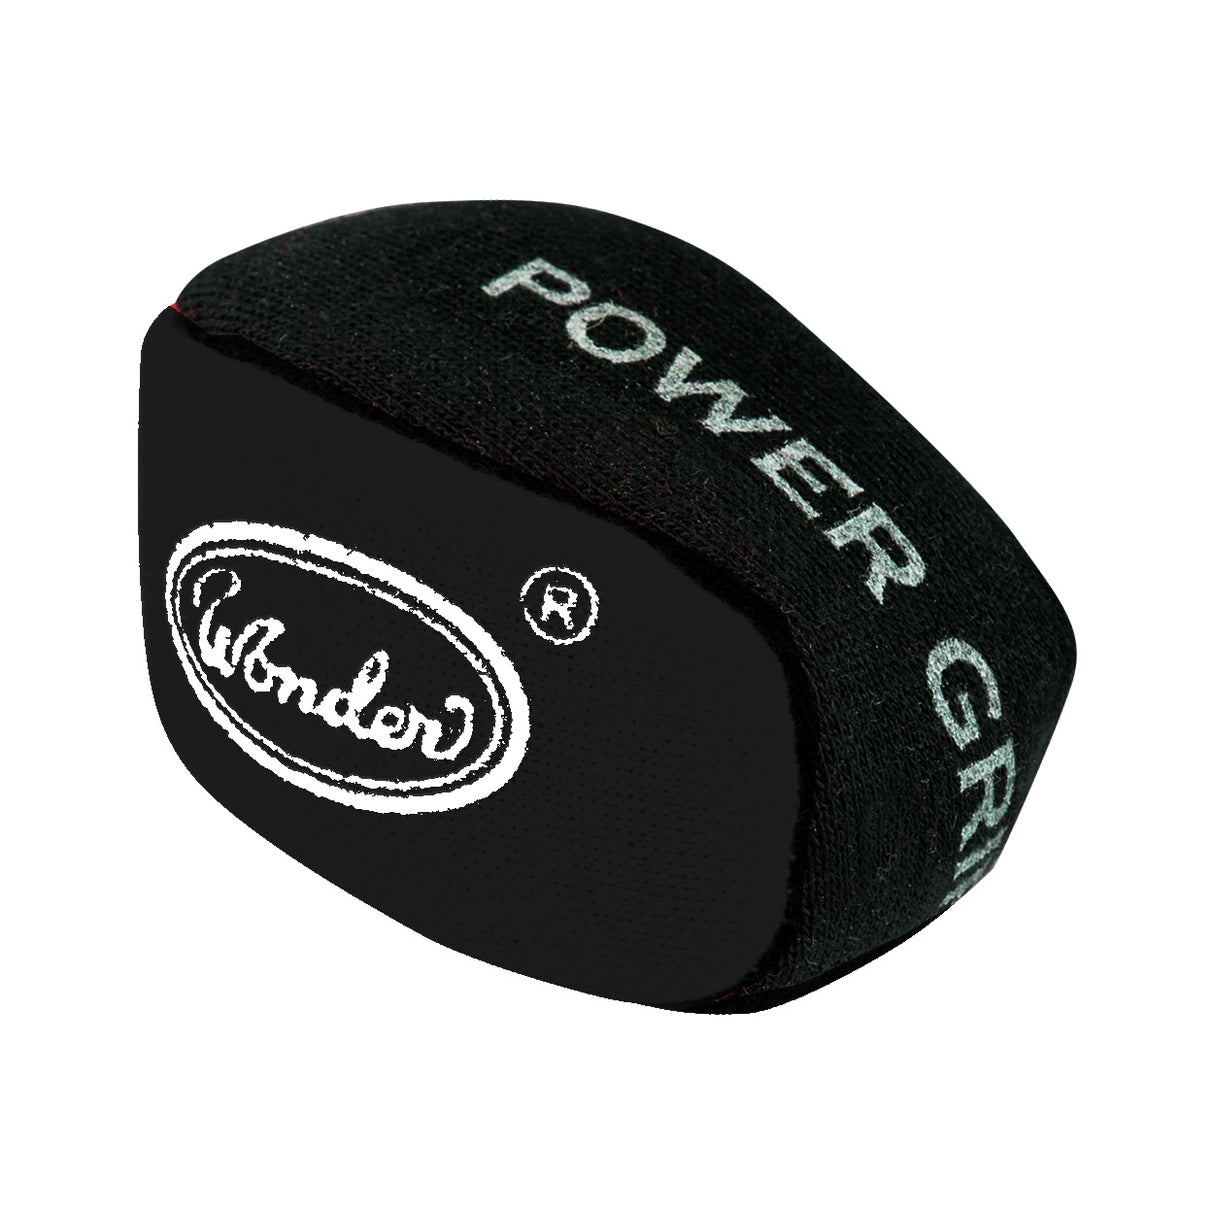 Designa Power Grip Ball - For Better Grip Dart Control - Absorbs Moisture